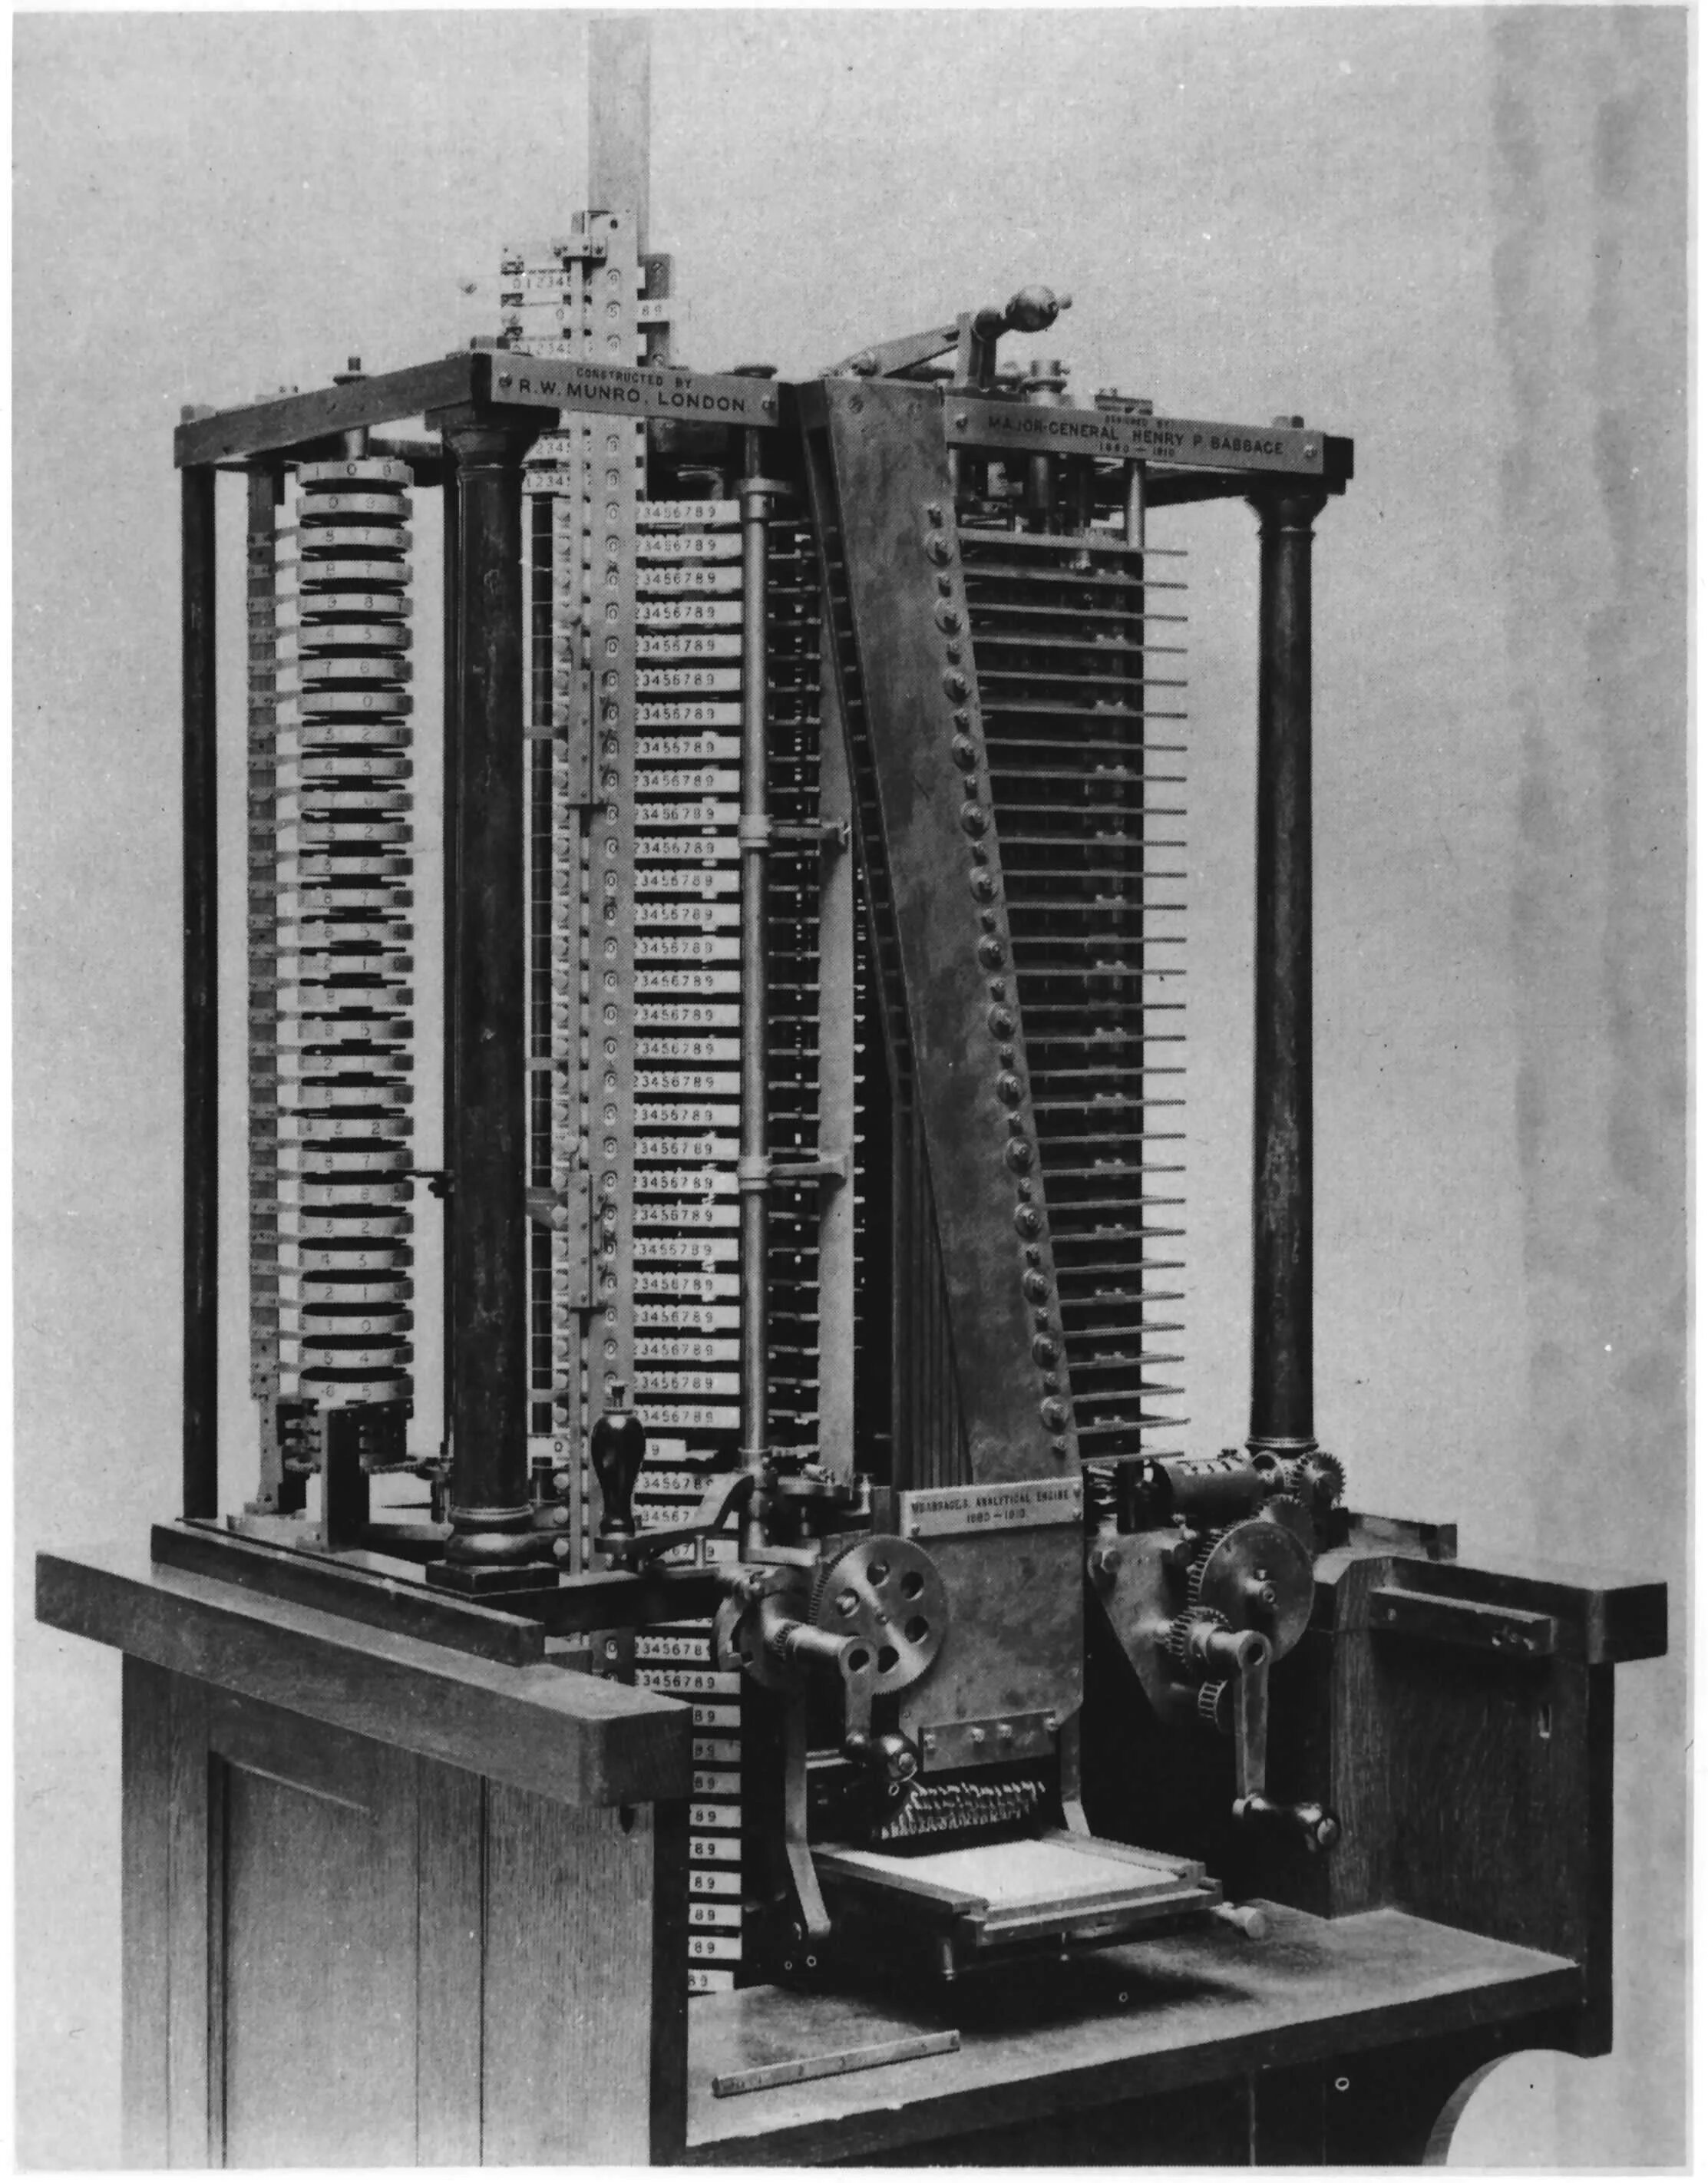 Аналитическая машина Бэббиджа. Чарльзом Бэббиджем аналитическая машина. Первая аналитическая машина Бэббиджа. "Аналитическая машина" Бэббиджа (1843).